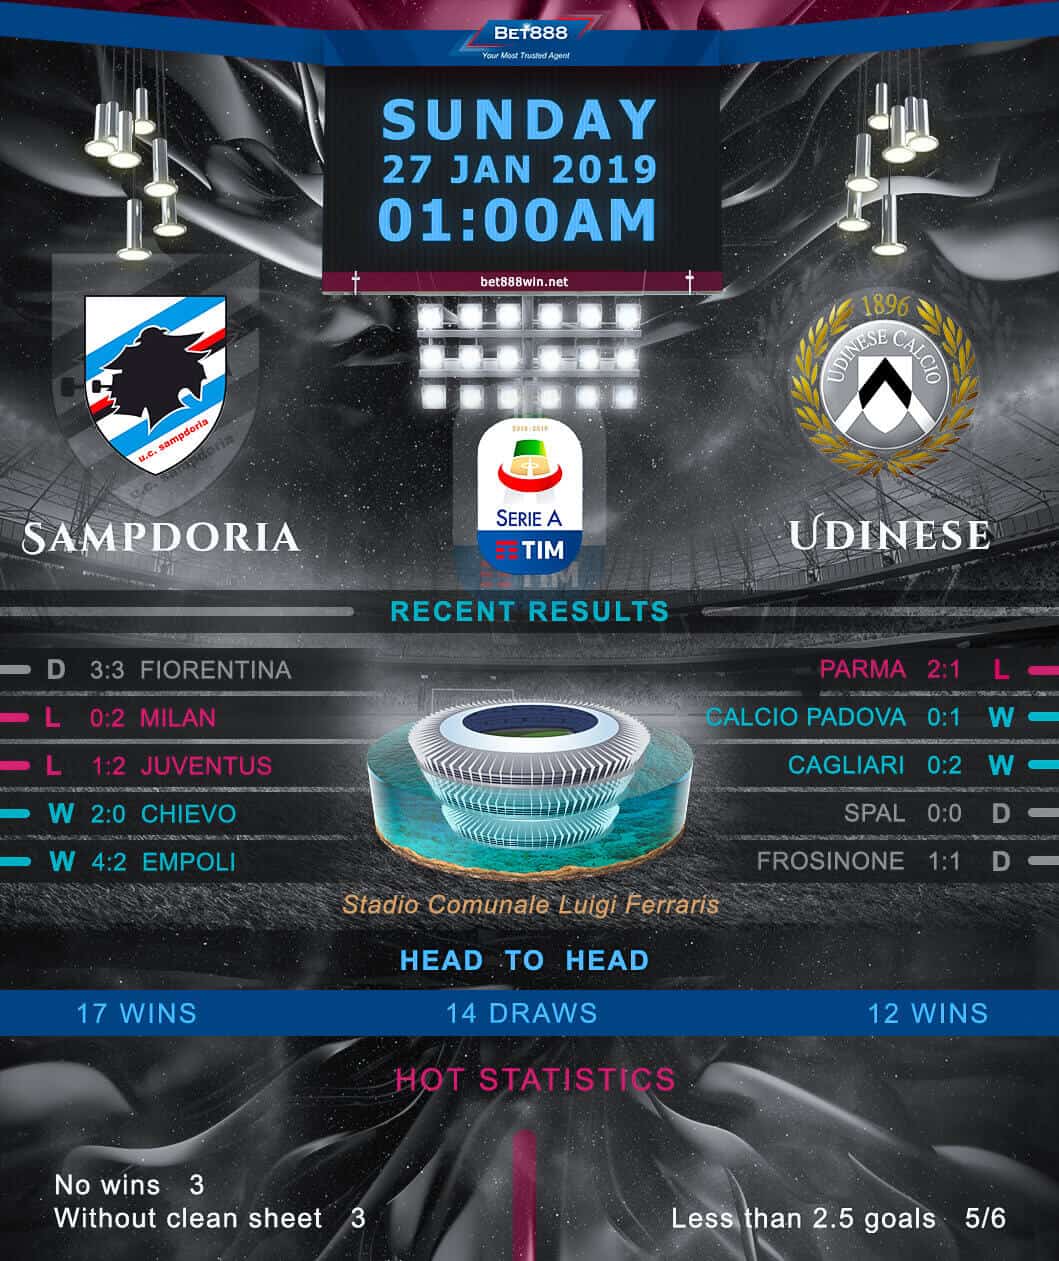 Sampdoria vs Udinese 27/01/19